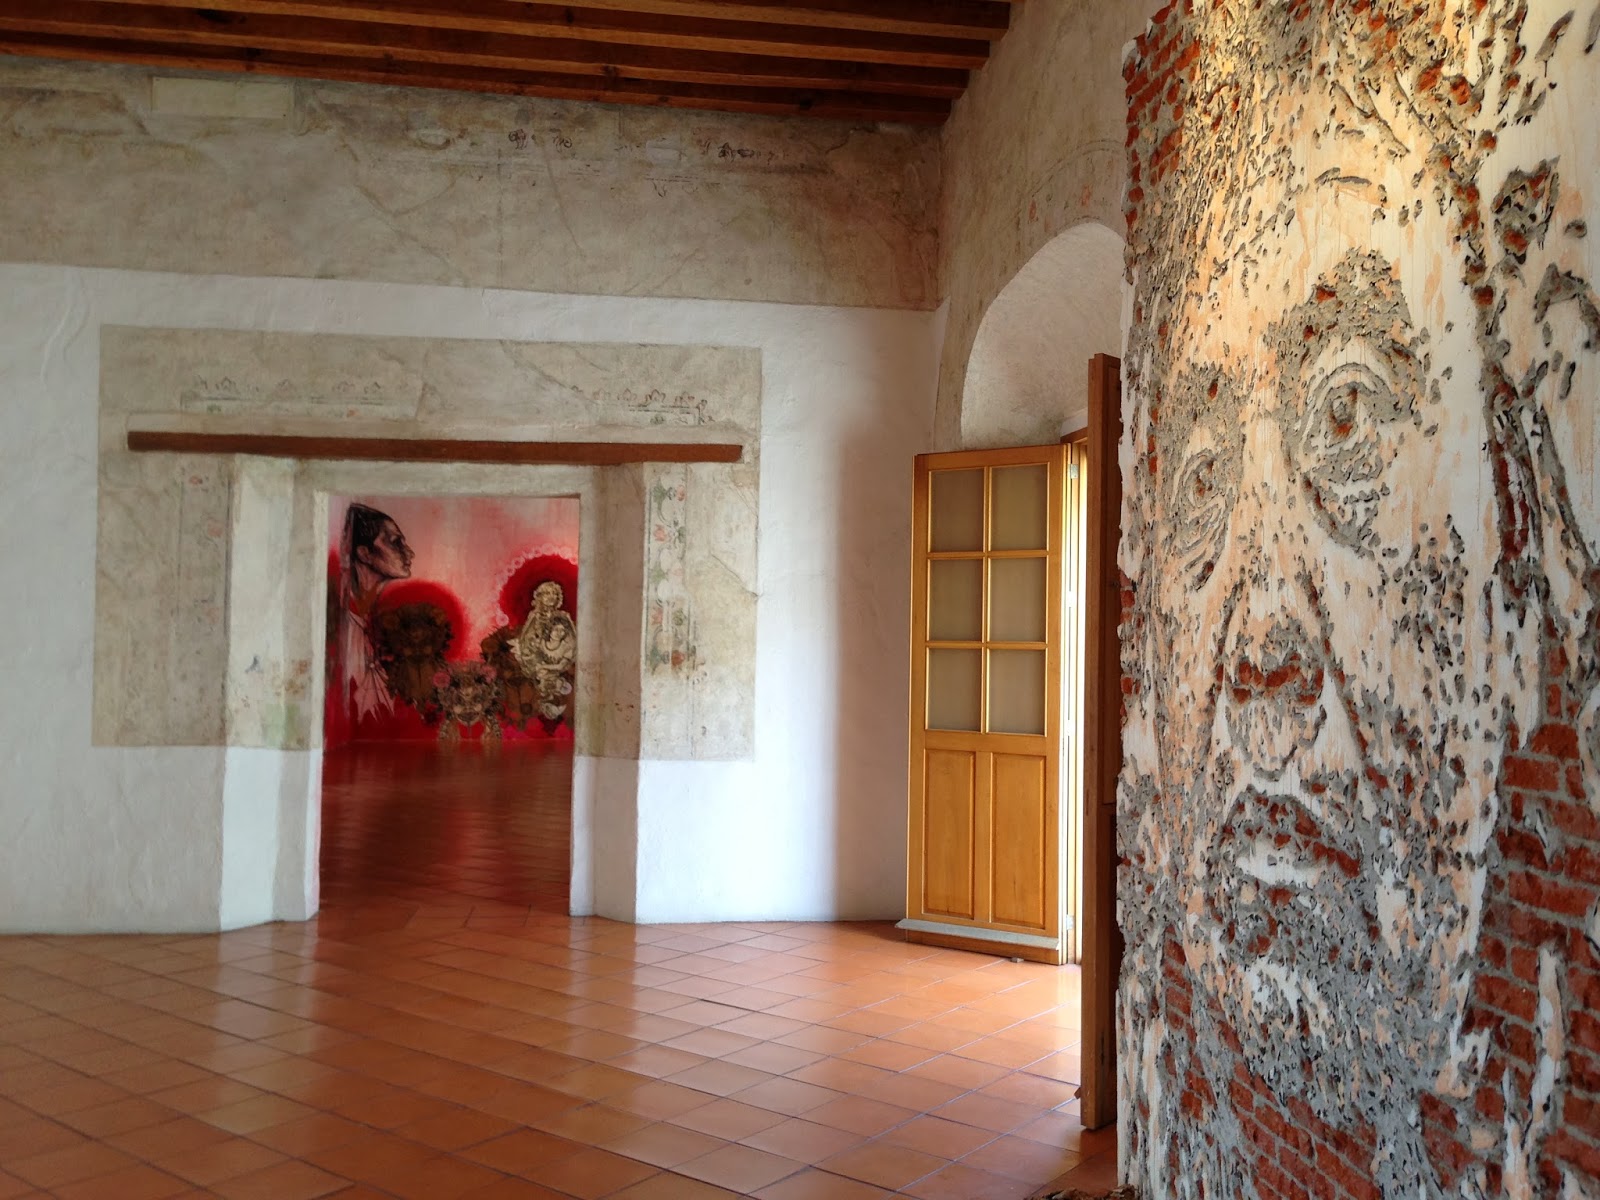 2Museo de Arte Contemporaneo de Oaxaca1